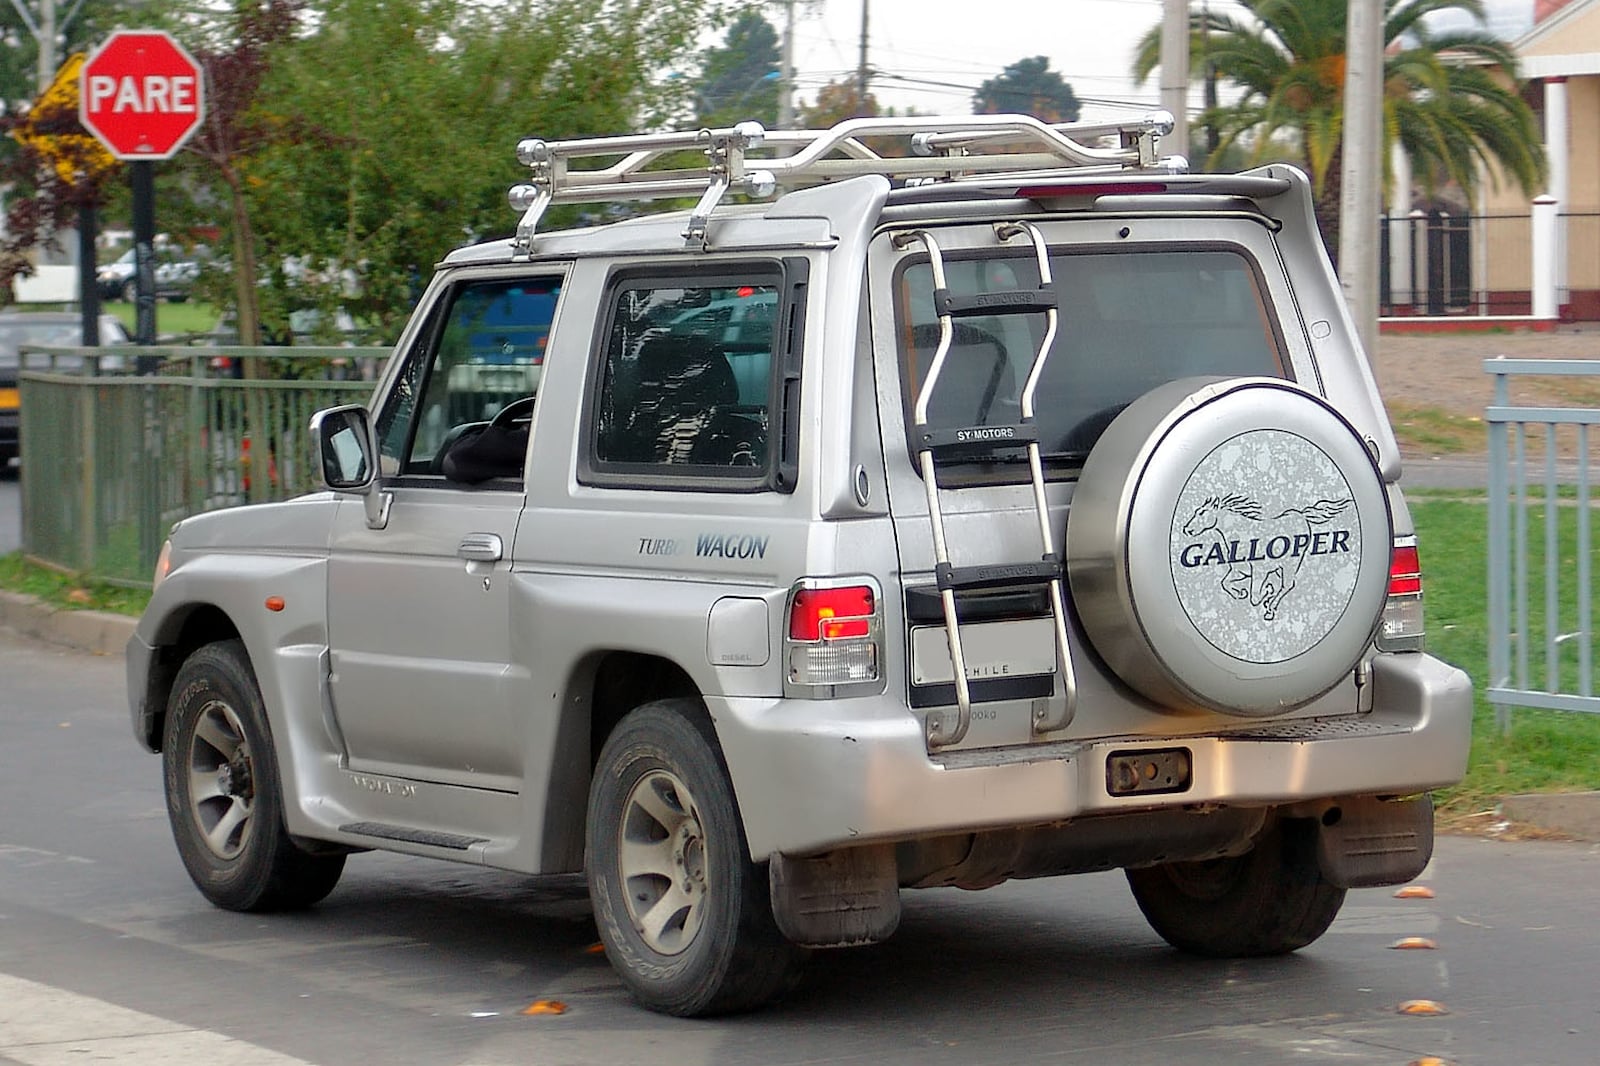 Galloper был самым дорогим Hyundai, который можно было купить в то время, и репутация южнокорейского бренда была далеко не такой звездной в 1997 году, когда дебютировал Galloper.